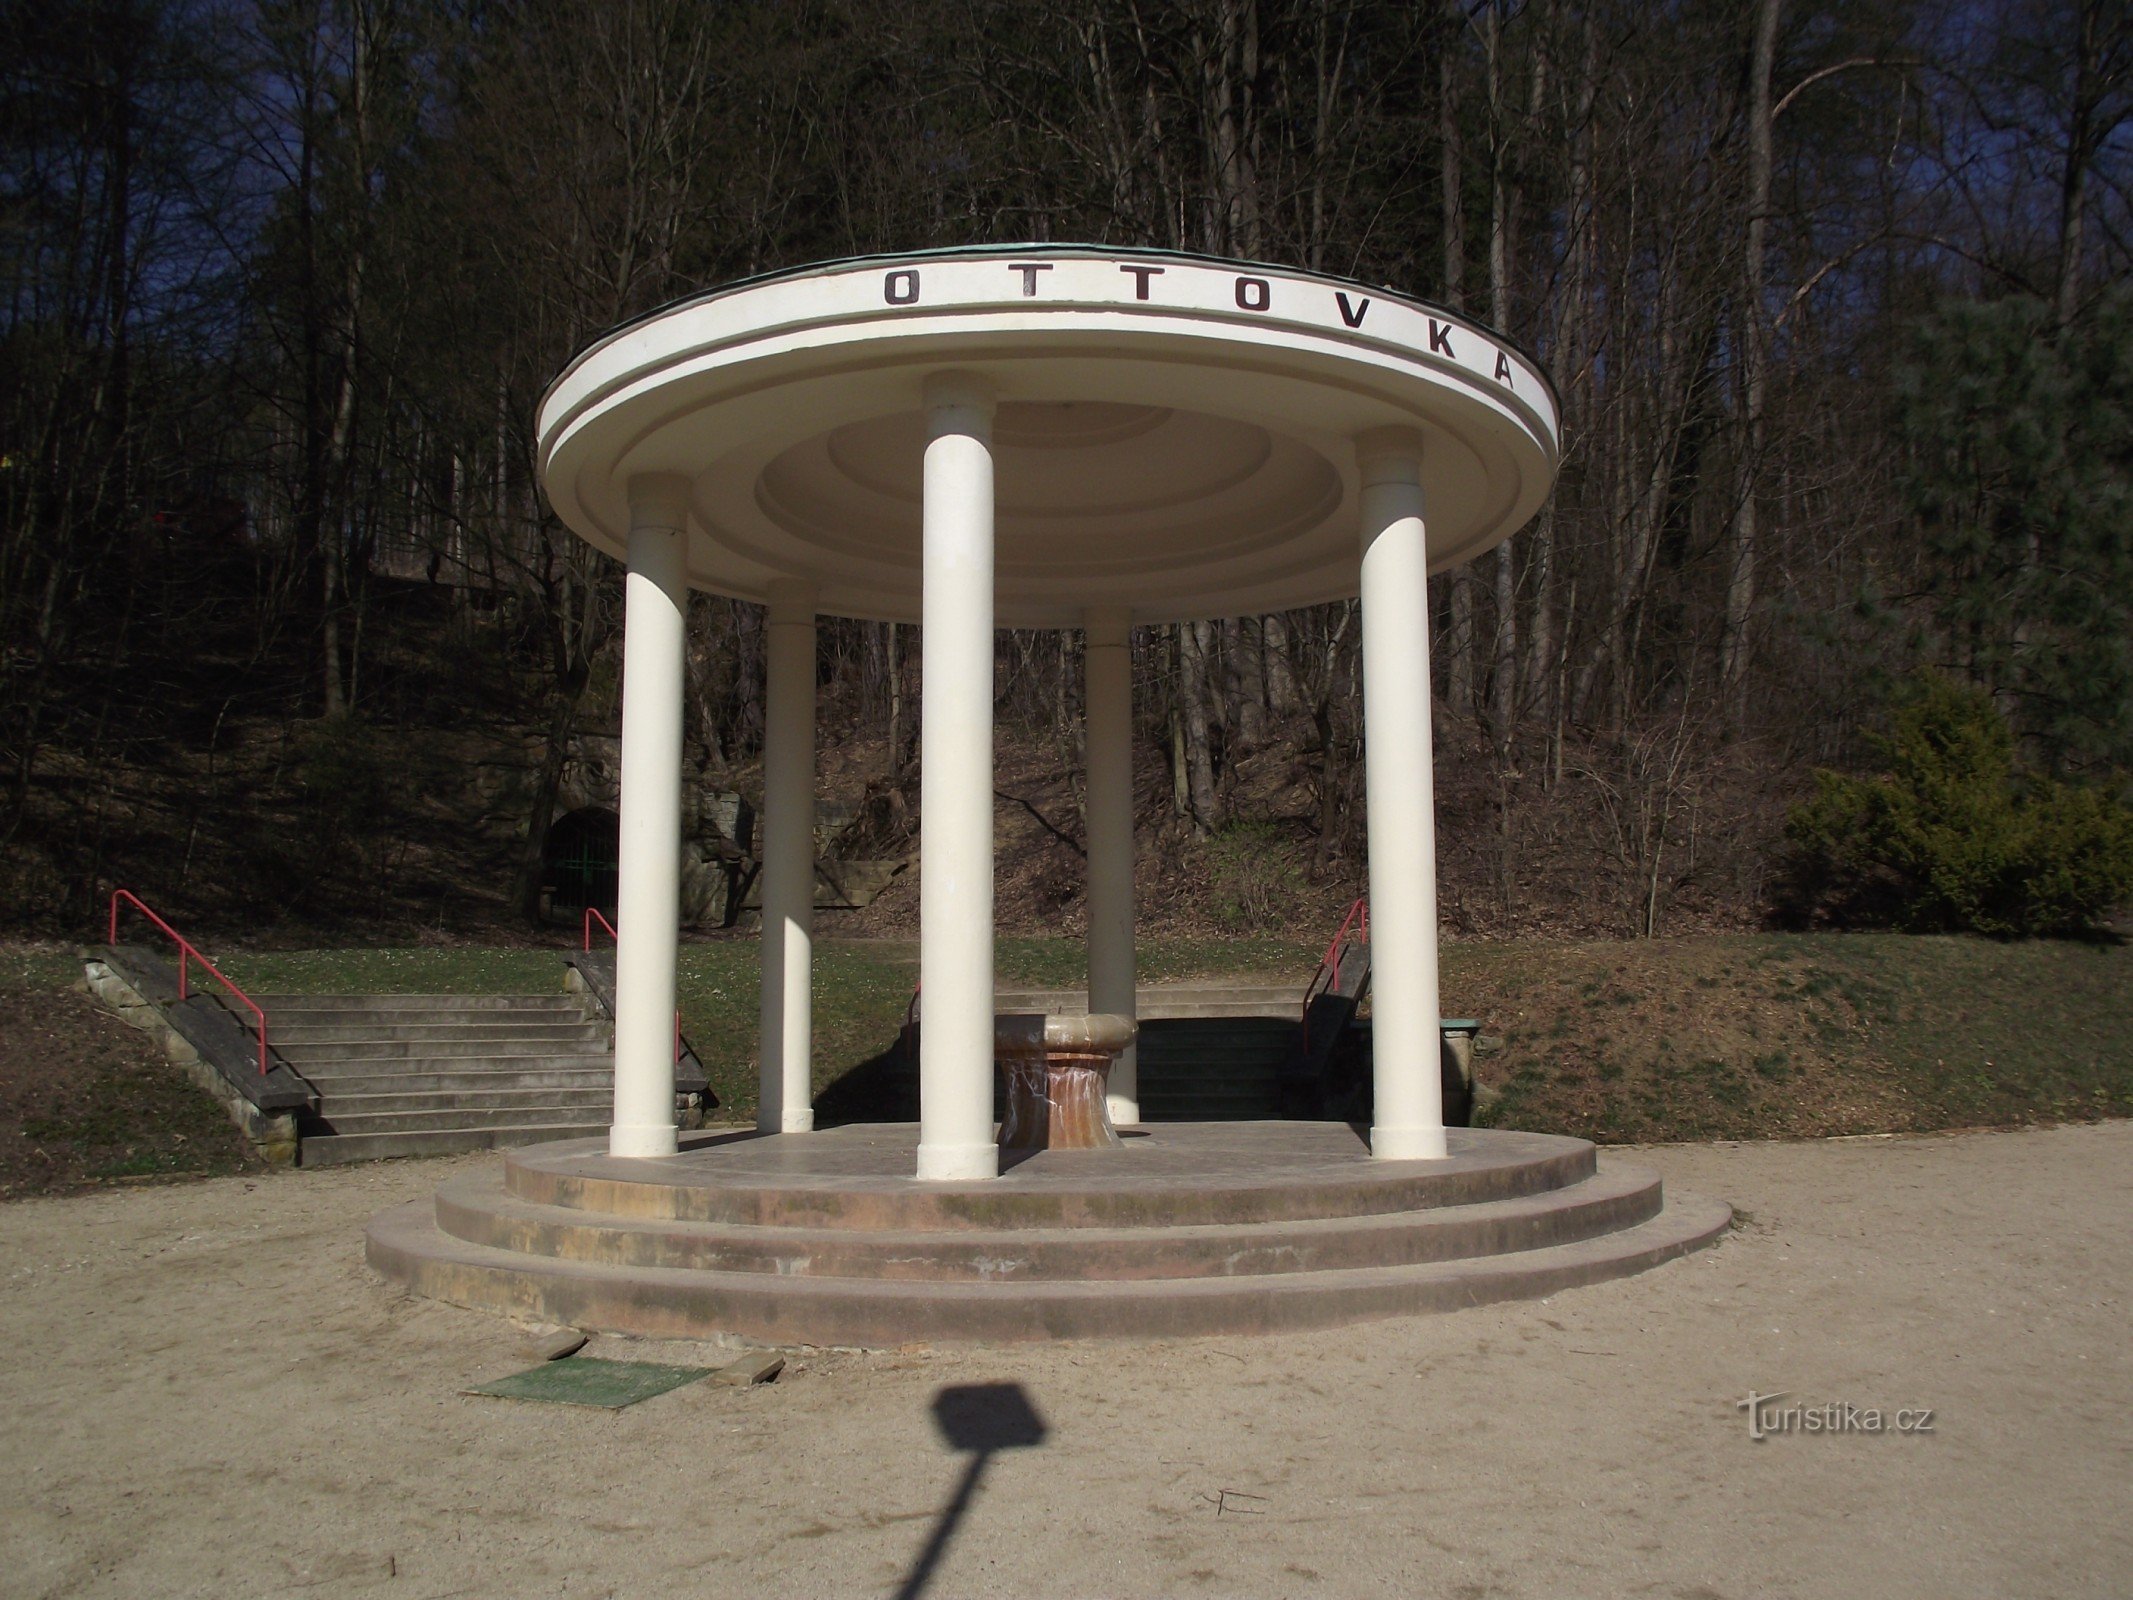 Luhačovice – Ottovka källa och paviljong